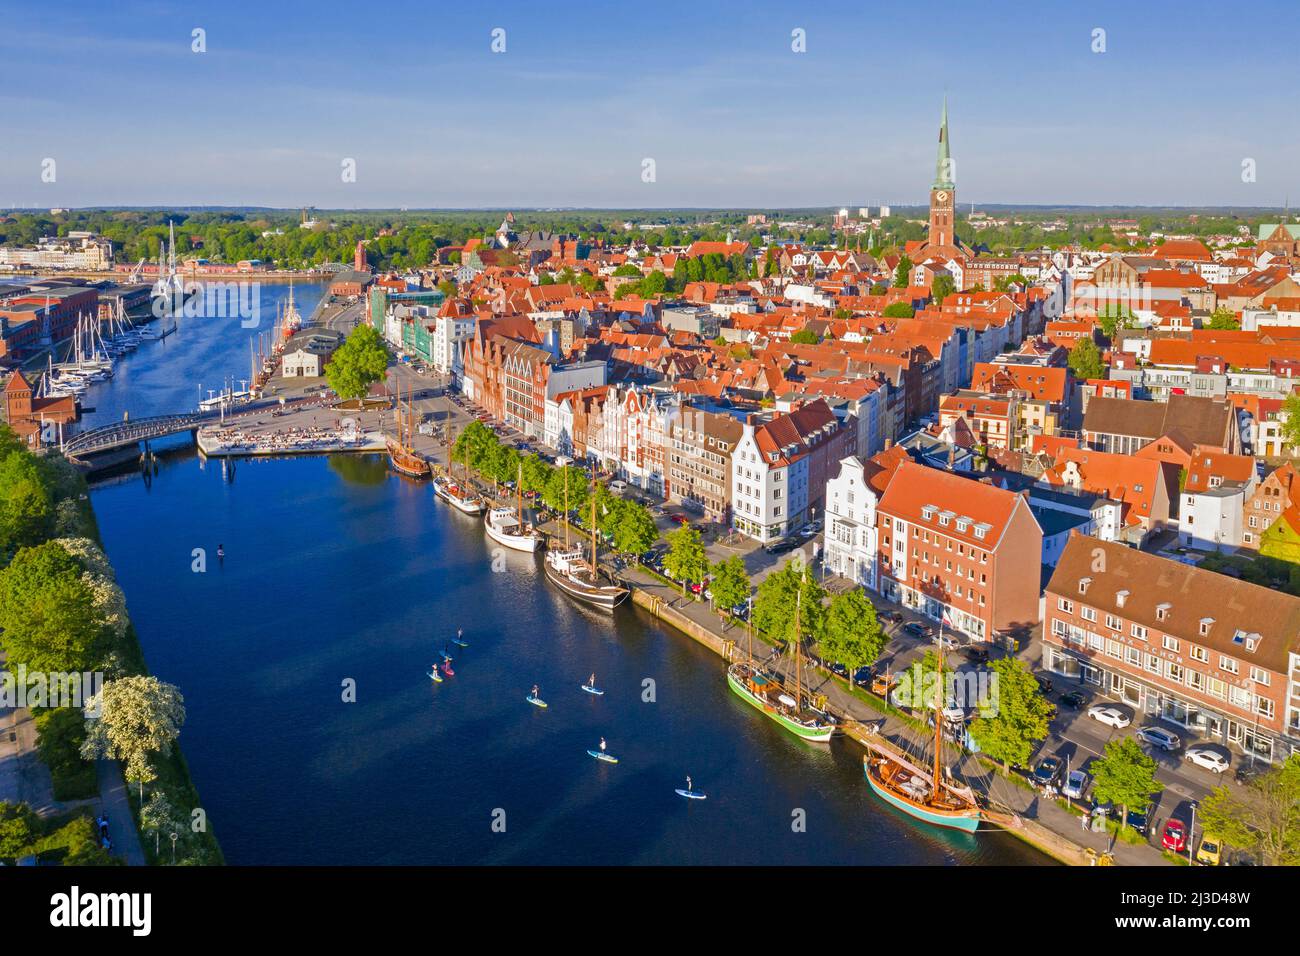 Vista aérea sobre el río Trave y antiguos barcos de vela y barcos en el casco antiguo de la ciudad hanseática de Lübeck, Schleswig-Holstein, Alemania Foto de stock